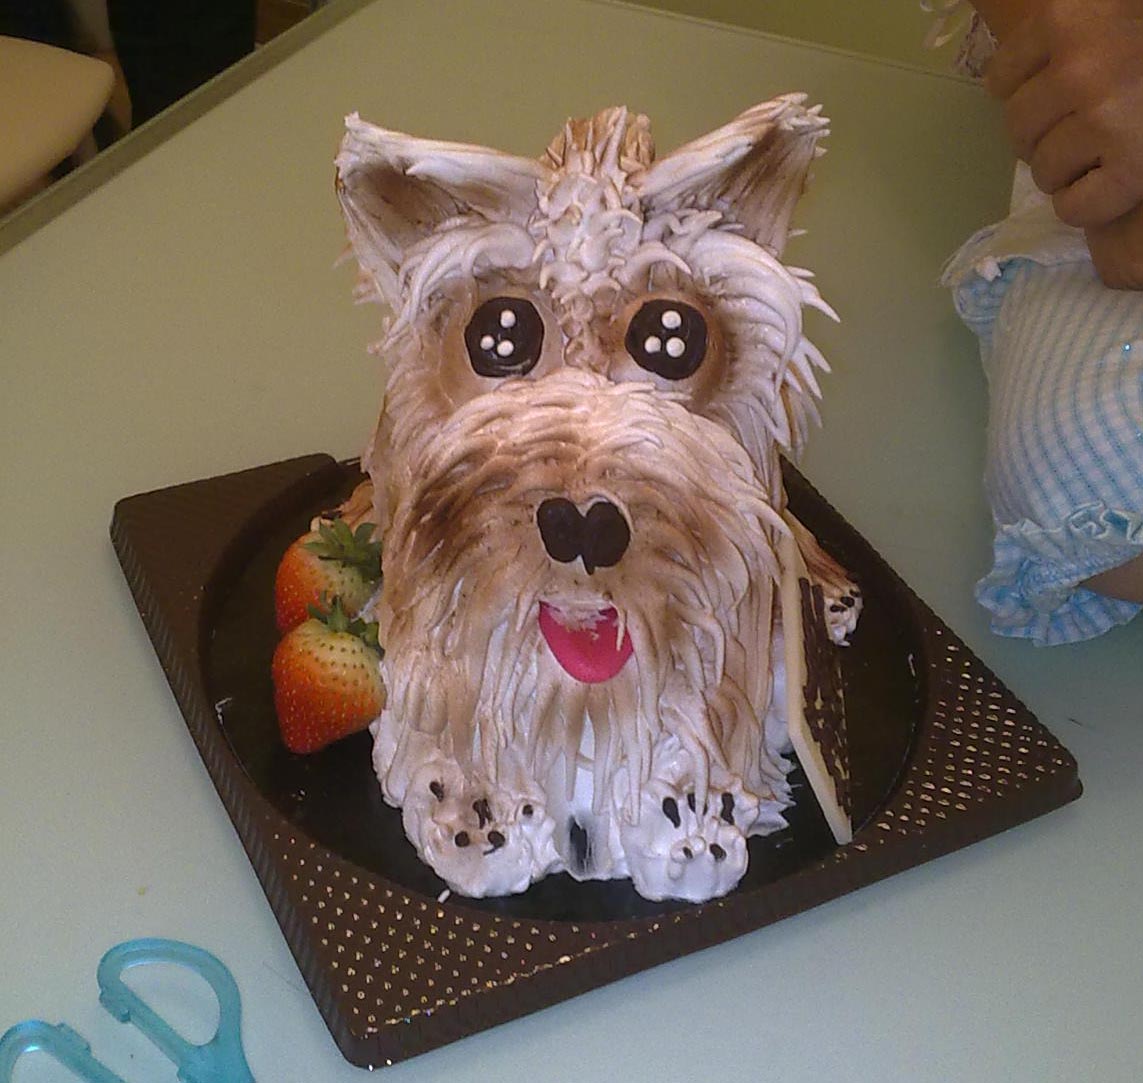 宠物狗狗的蛋糕怎么做_宠物狗狗的蛋糕的做法_豆果美食